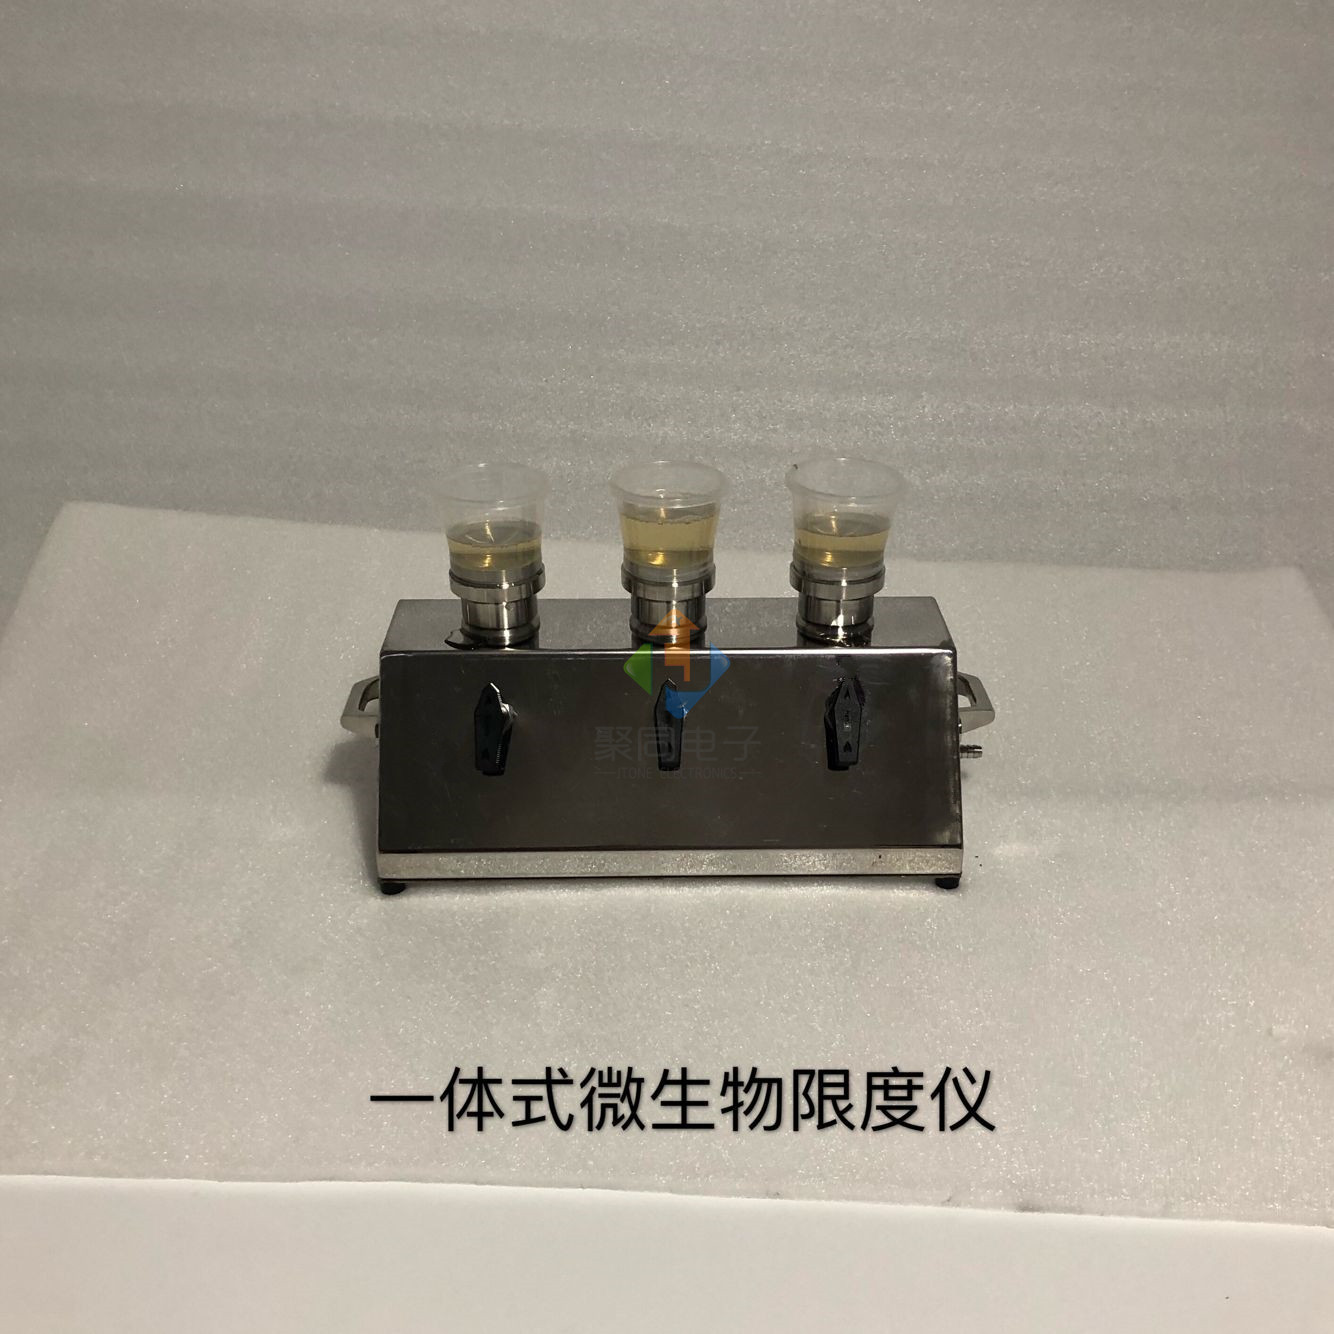 北京微生物限度检查装置JTW-600S薄膜过滤法